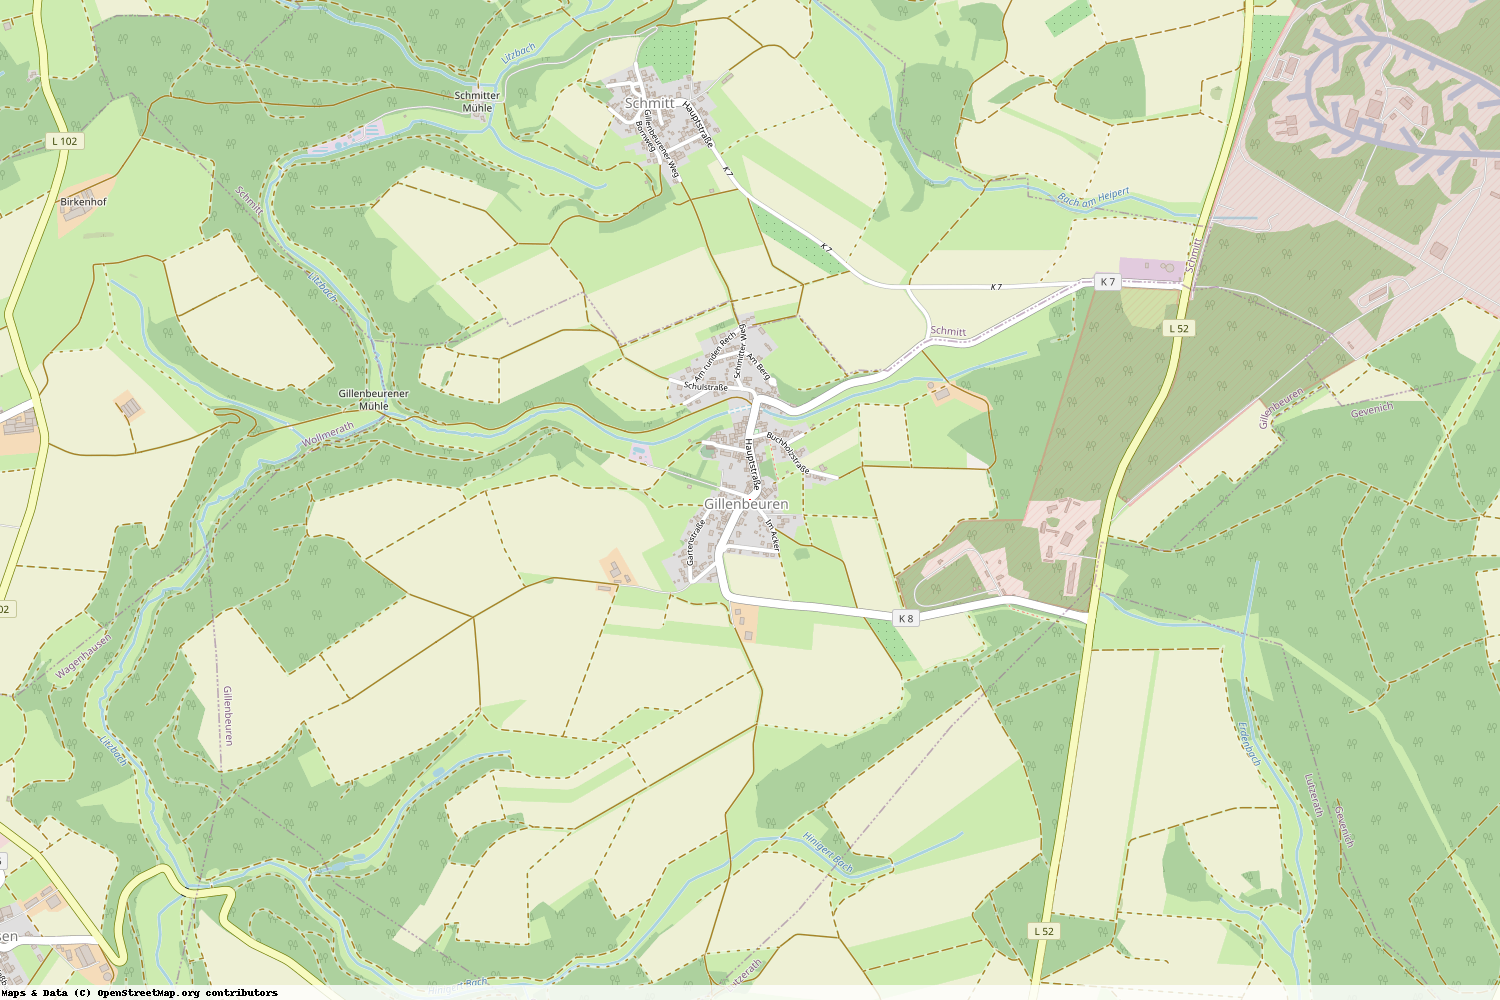 Ist gerade Stromausfall in Rheinland-Pfalz - Cochem-Zell - Gillenbeuren?